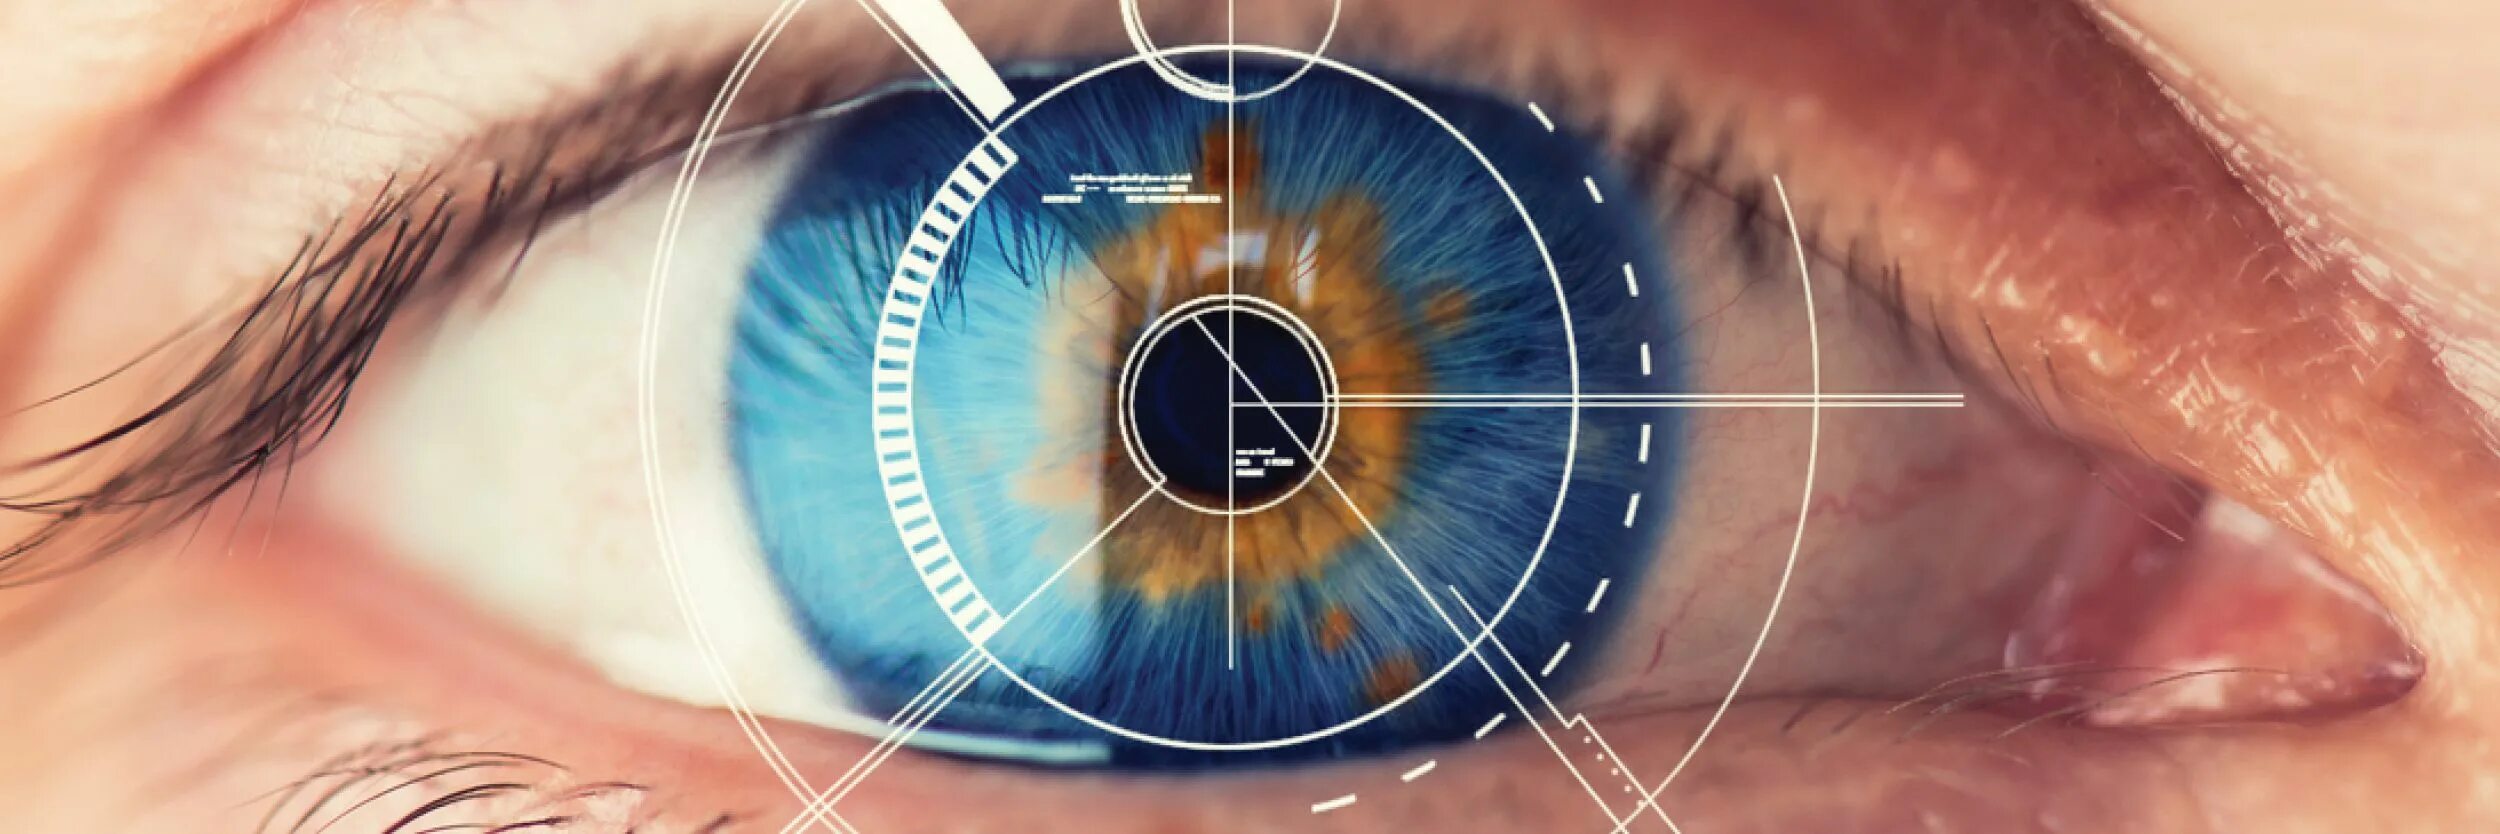 Сетчатка глаза биометрия. Сканер по радужной оболочке глаза. Коррекция зрения лазером. Тест сетчатки глаза